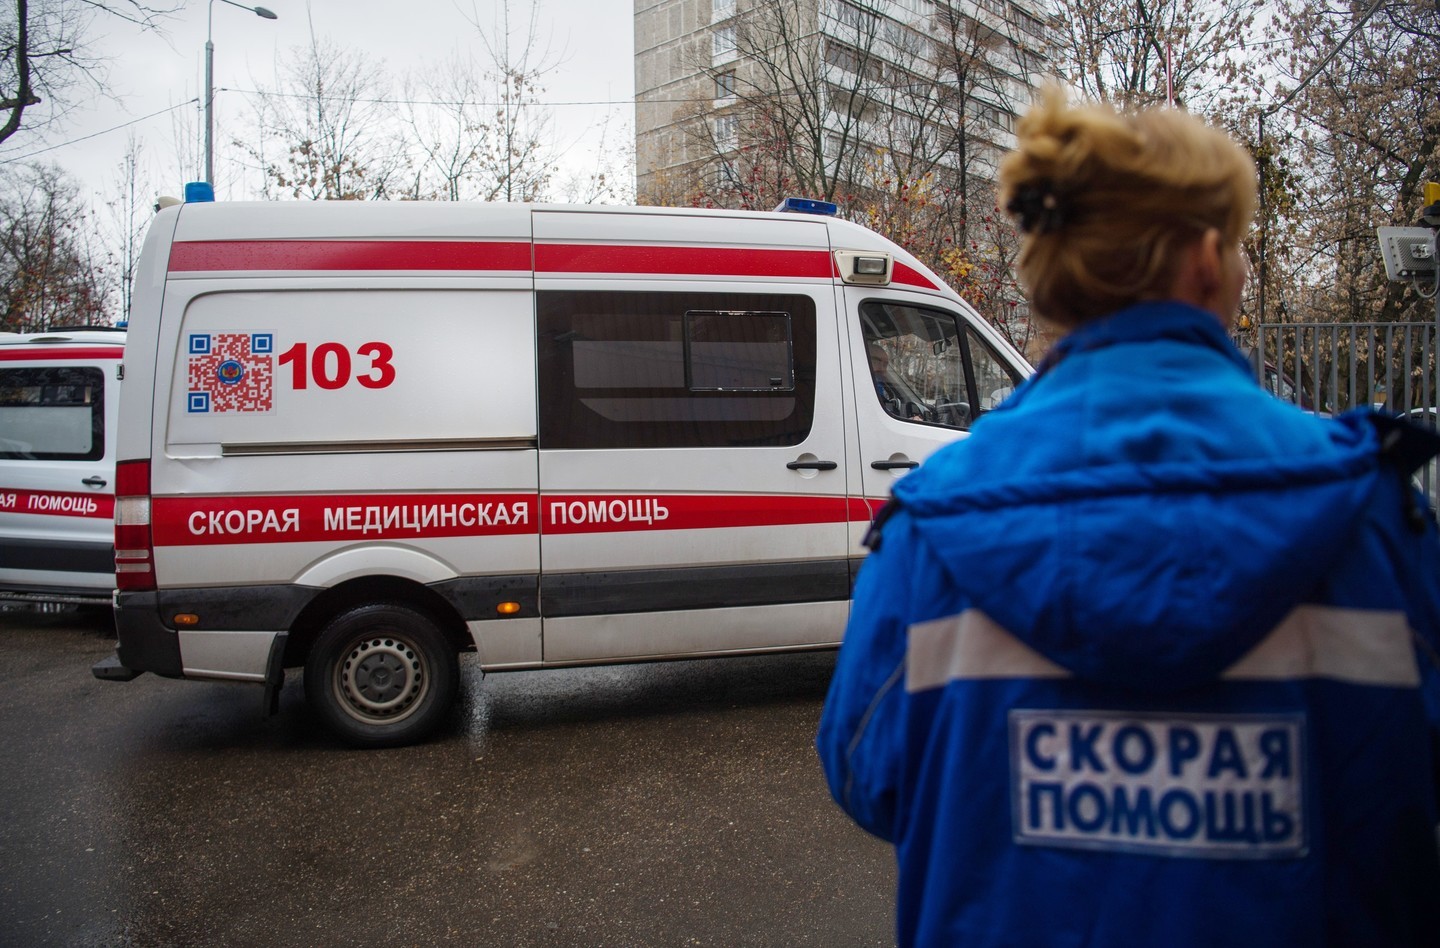 Карта подстанций скорой помощи в москве